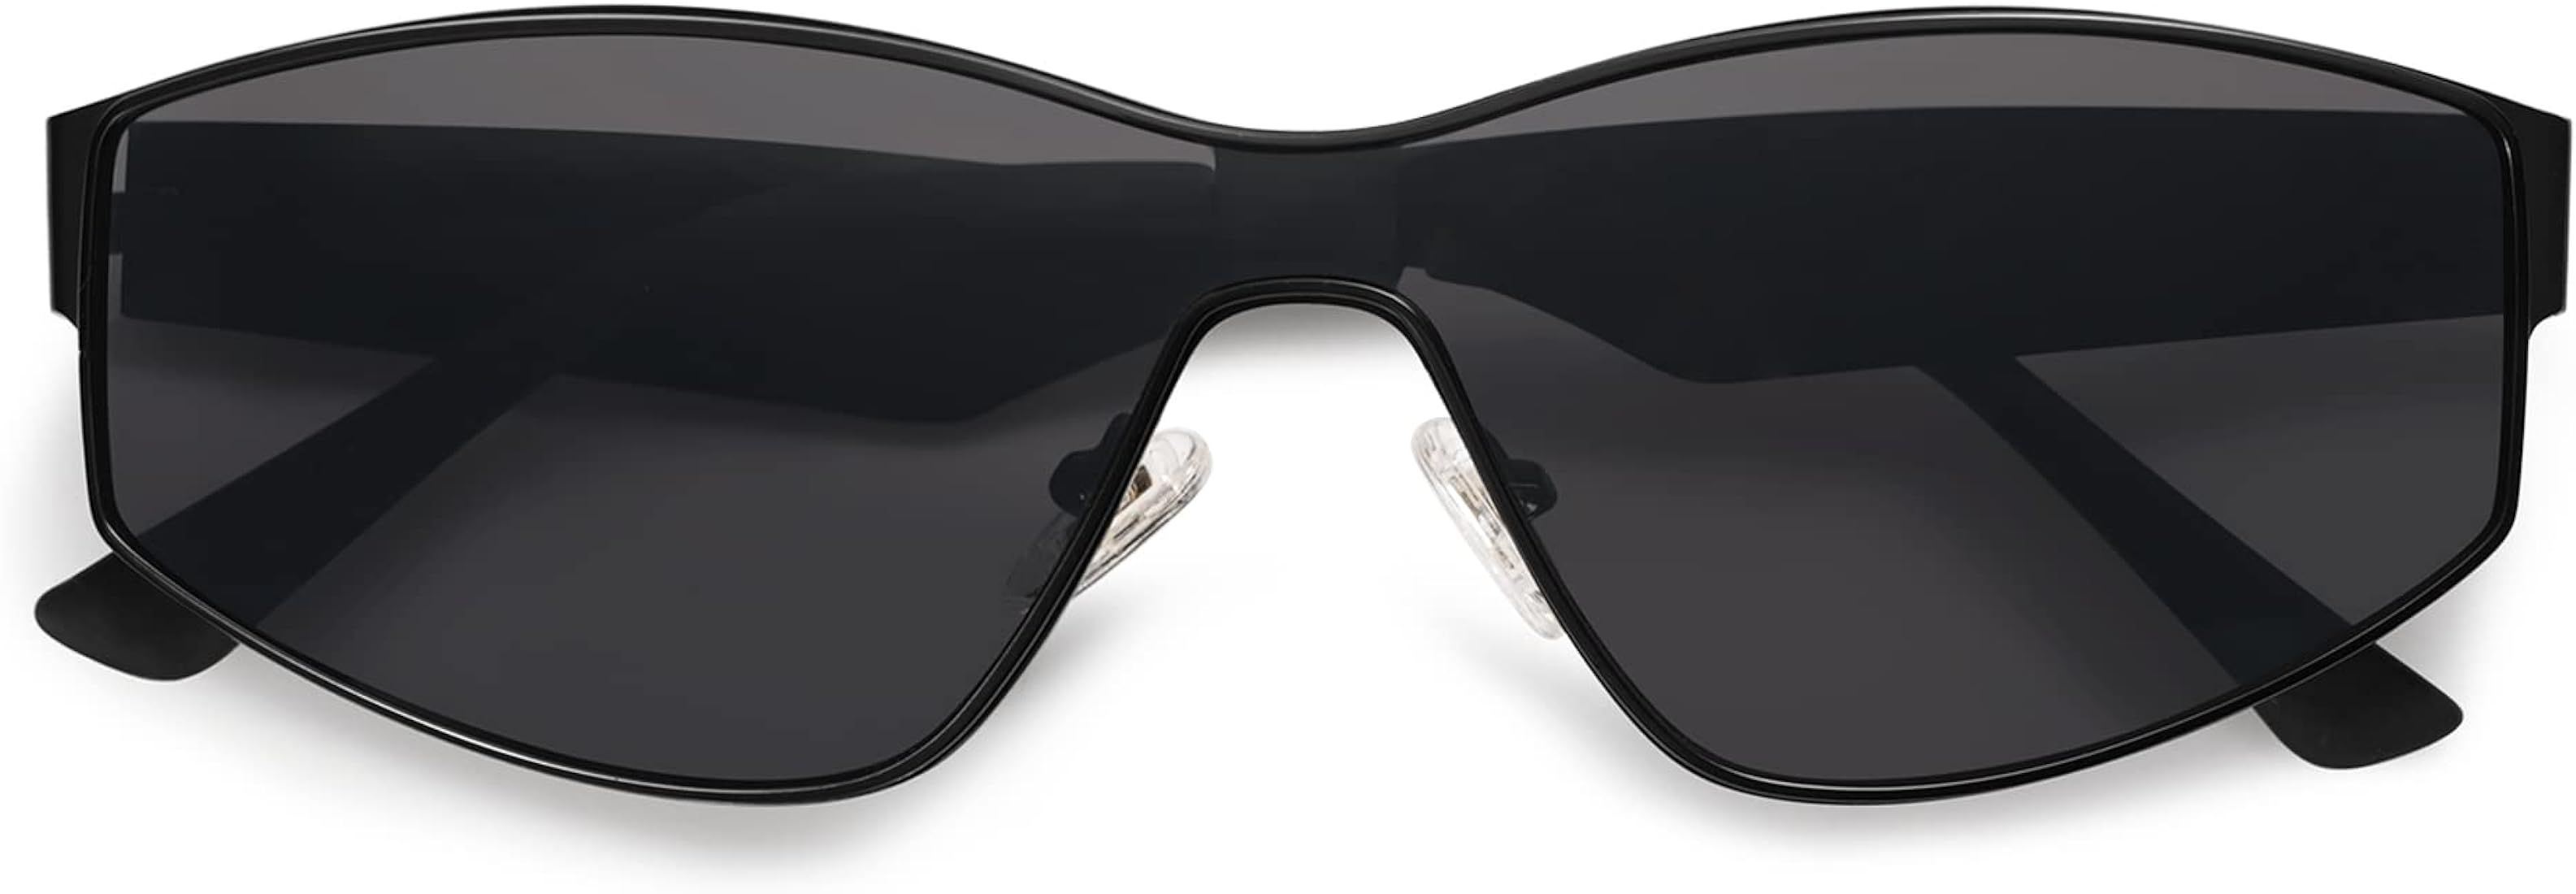 Vintage Rectangle Cat Eye Sunglasses for Women Men Shades Seamless UV400 Lenses SJ1186 | Amazon (US)